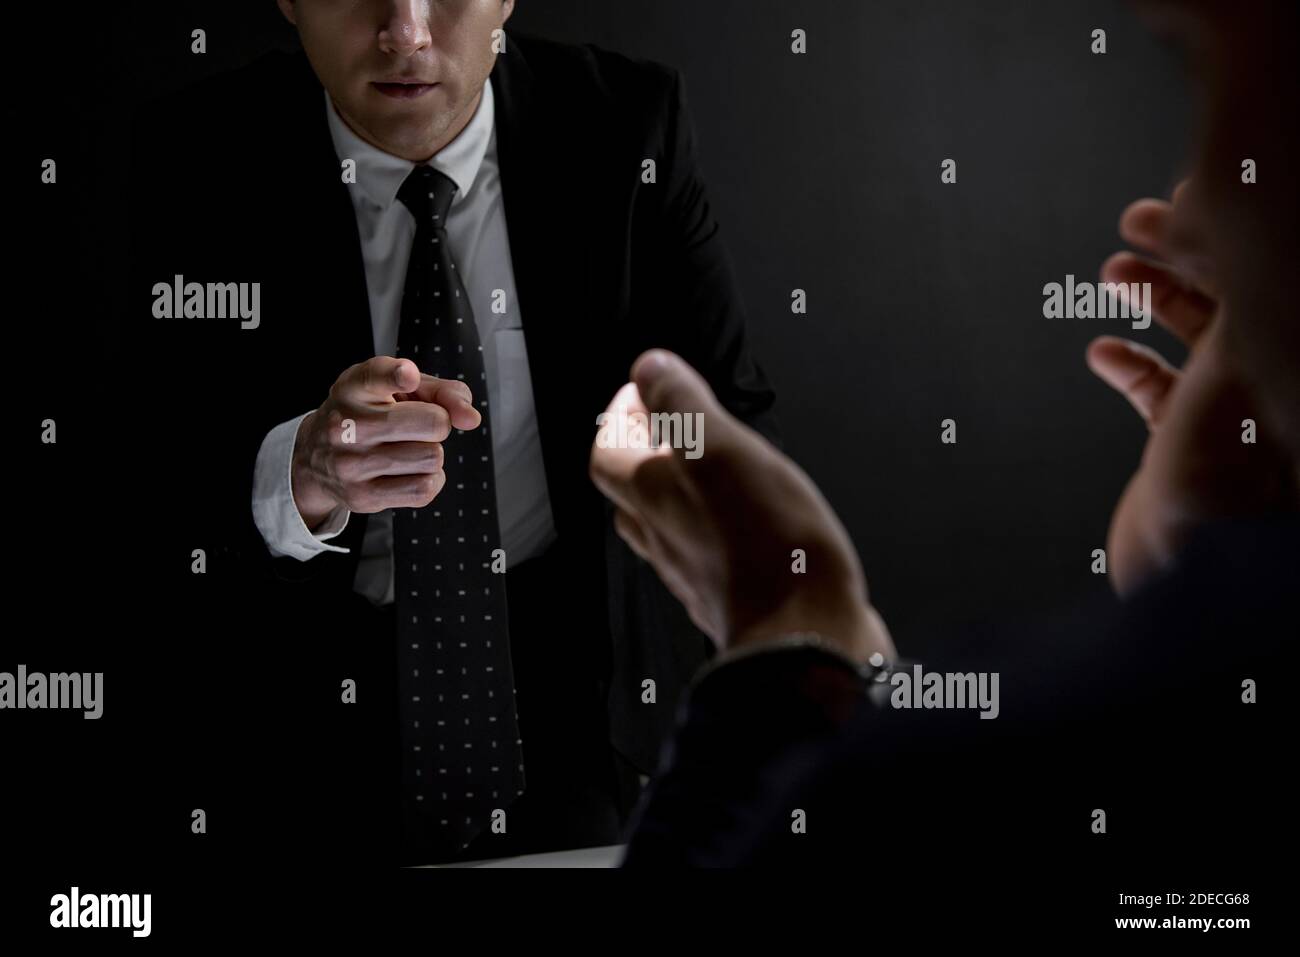 Détective pointant la main vers un suspect ou un criminel dans l'obscurité salle d'interrogatoire Banque D'Images